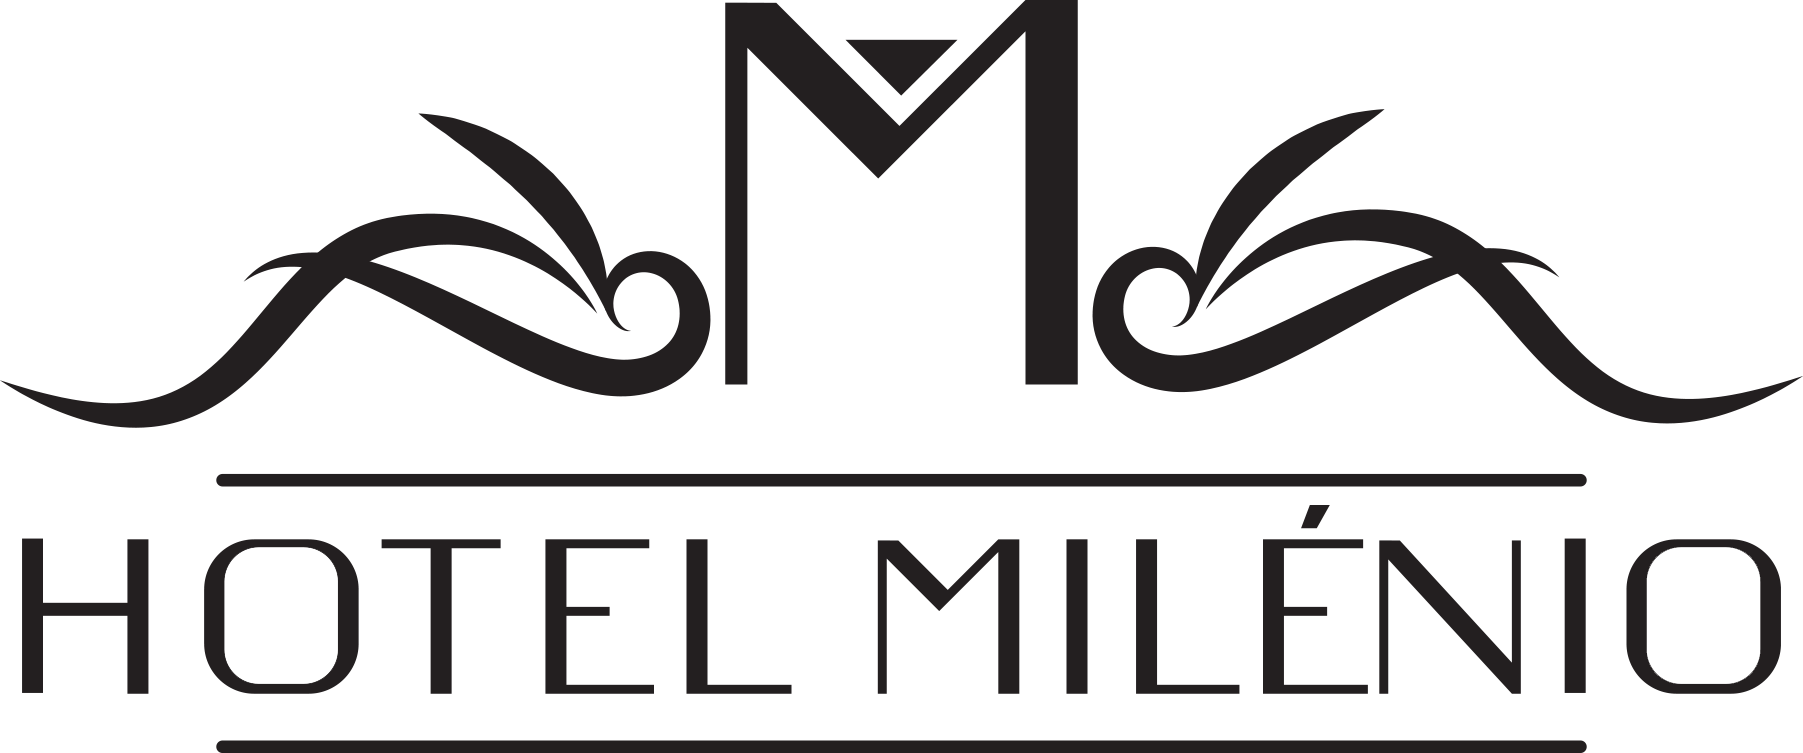 Hotel Milenio